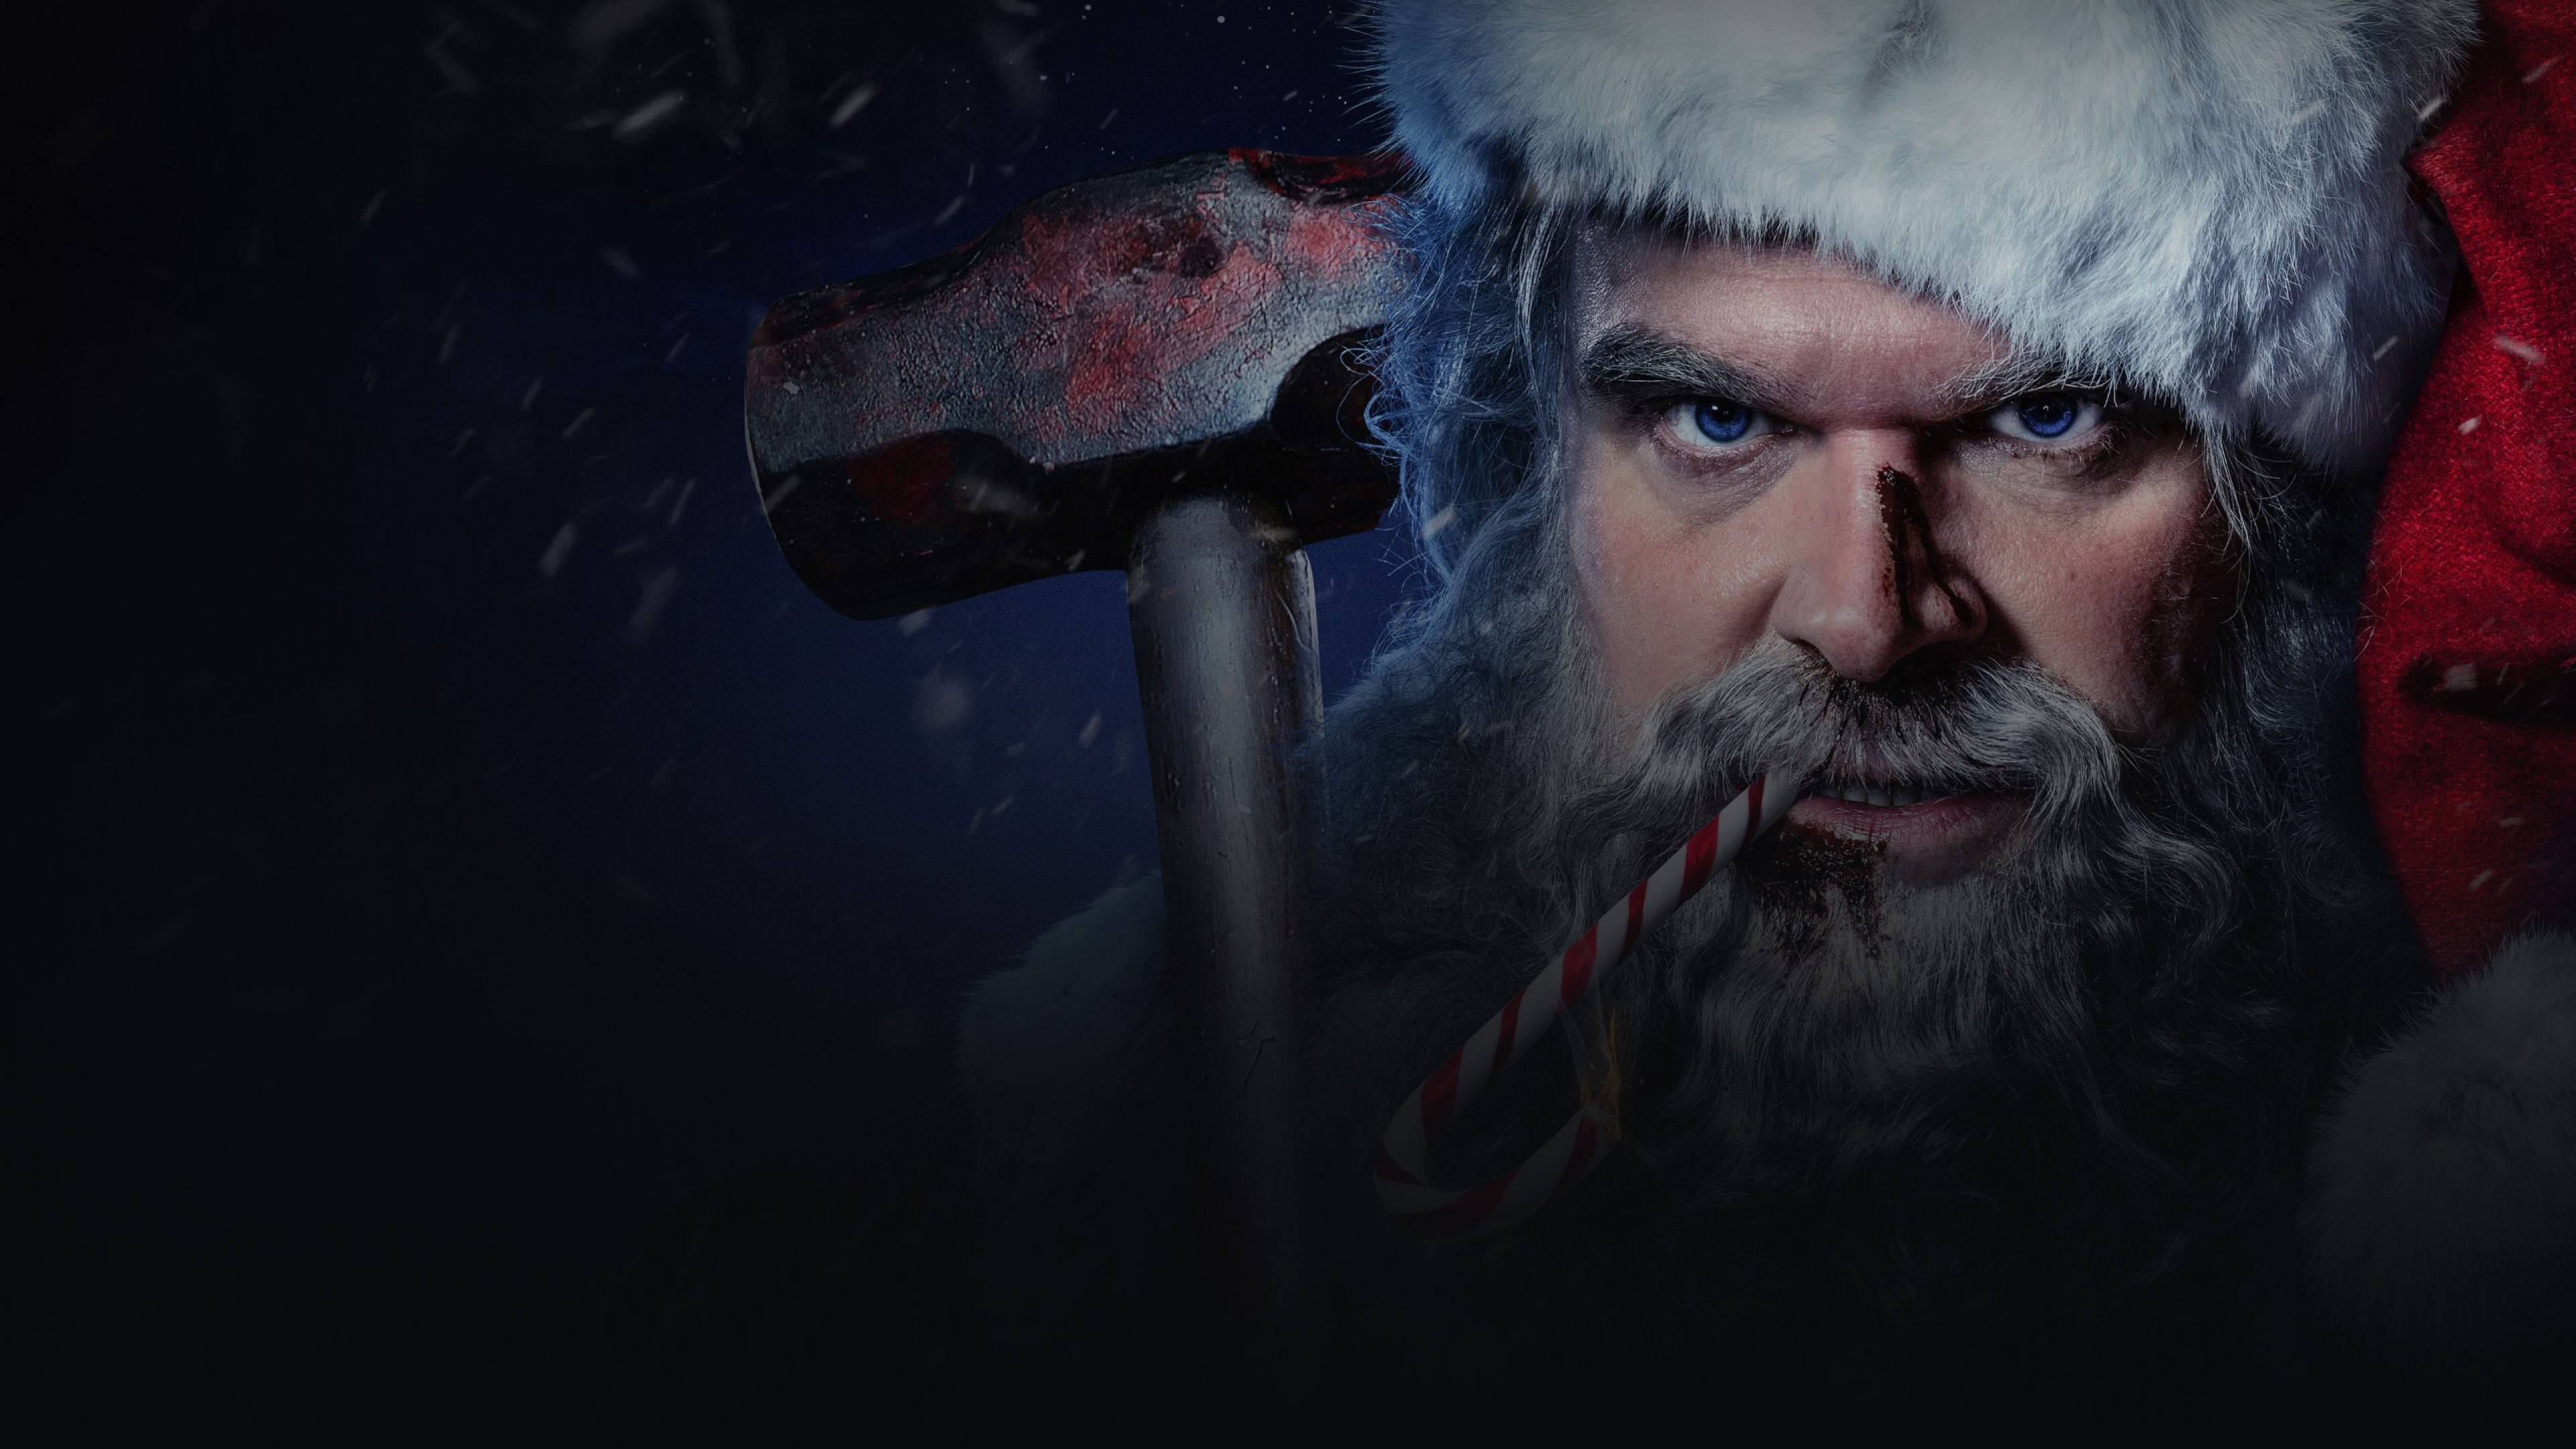 Billboard background image ft. Bad Santa